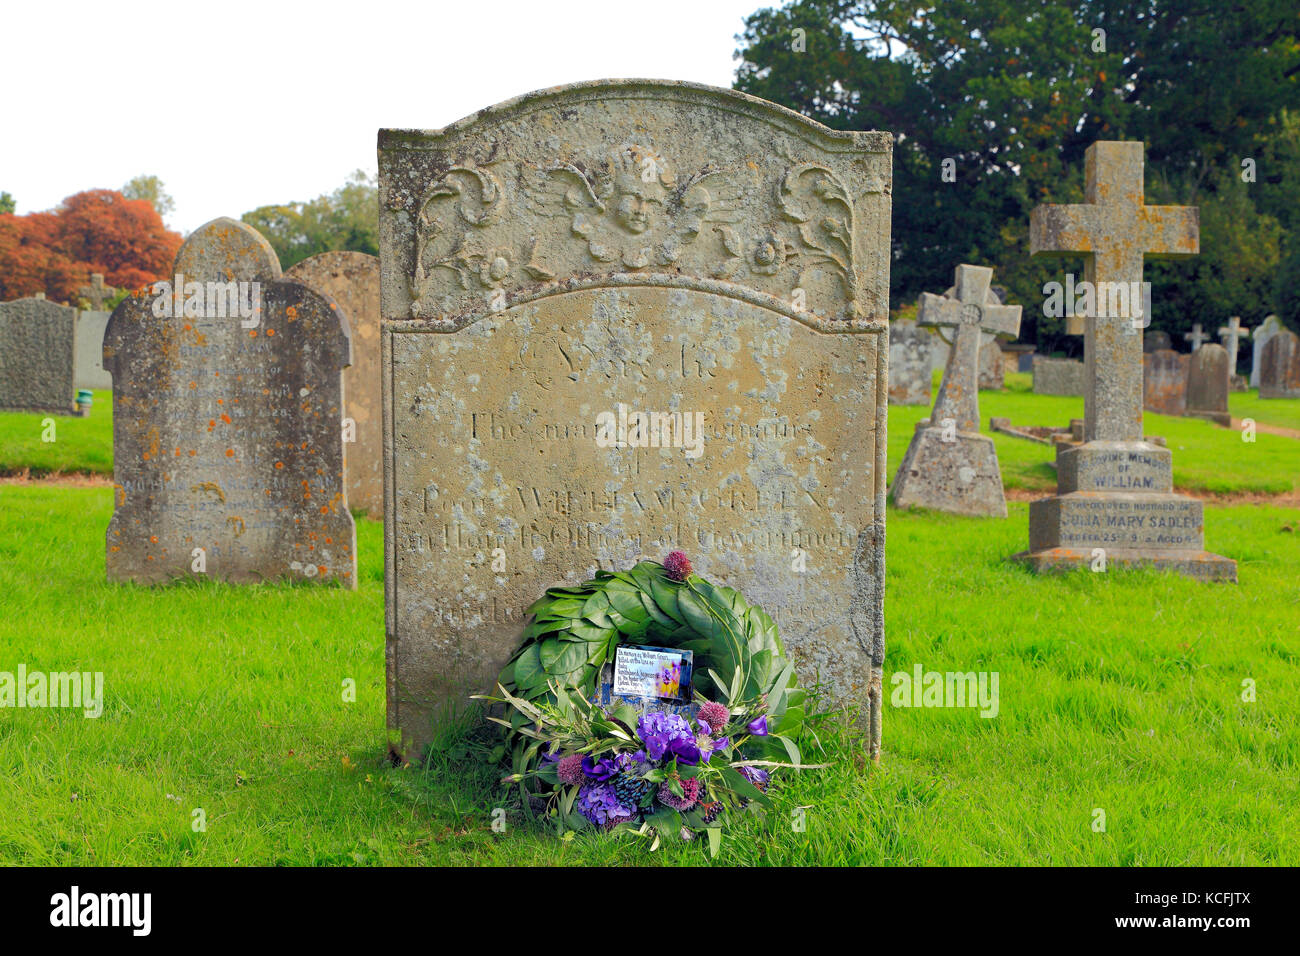 William Green pietra tombale, XVIII secolo funzionario doganale, assassinati dai trafficanti in 1784, con forza di confine corona, 26 settembre, 2017, Old Hunstanton Foto Stock